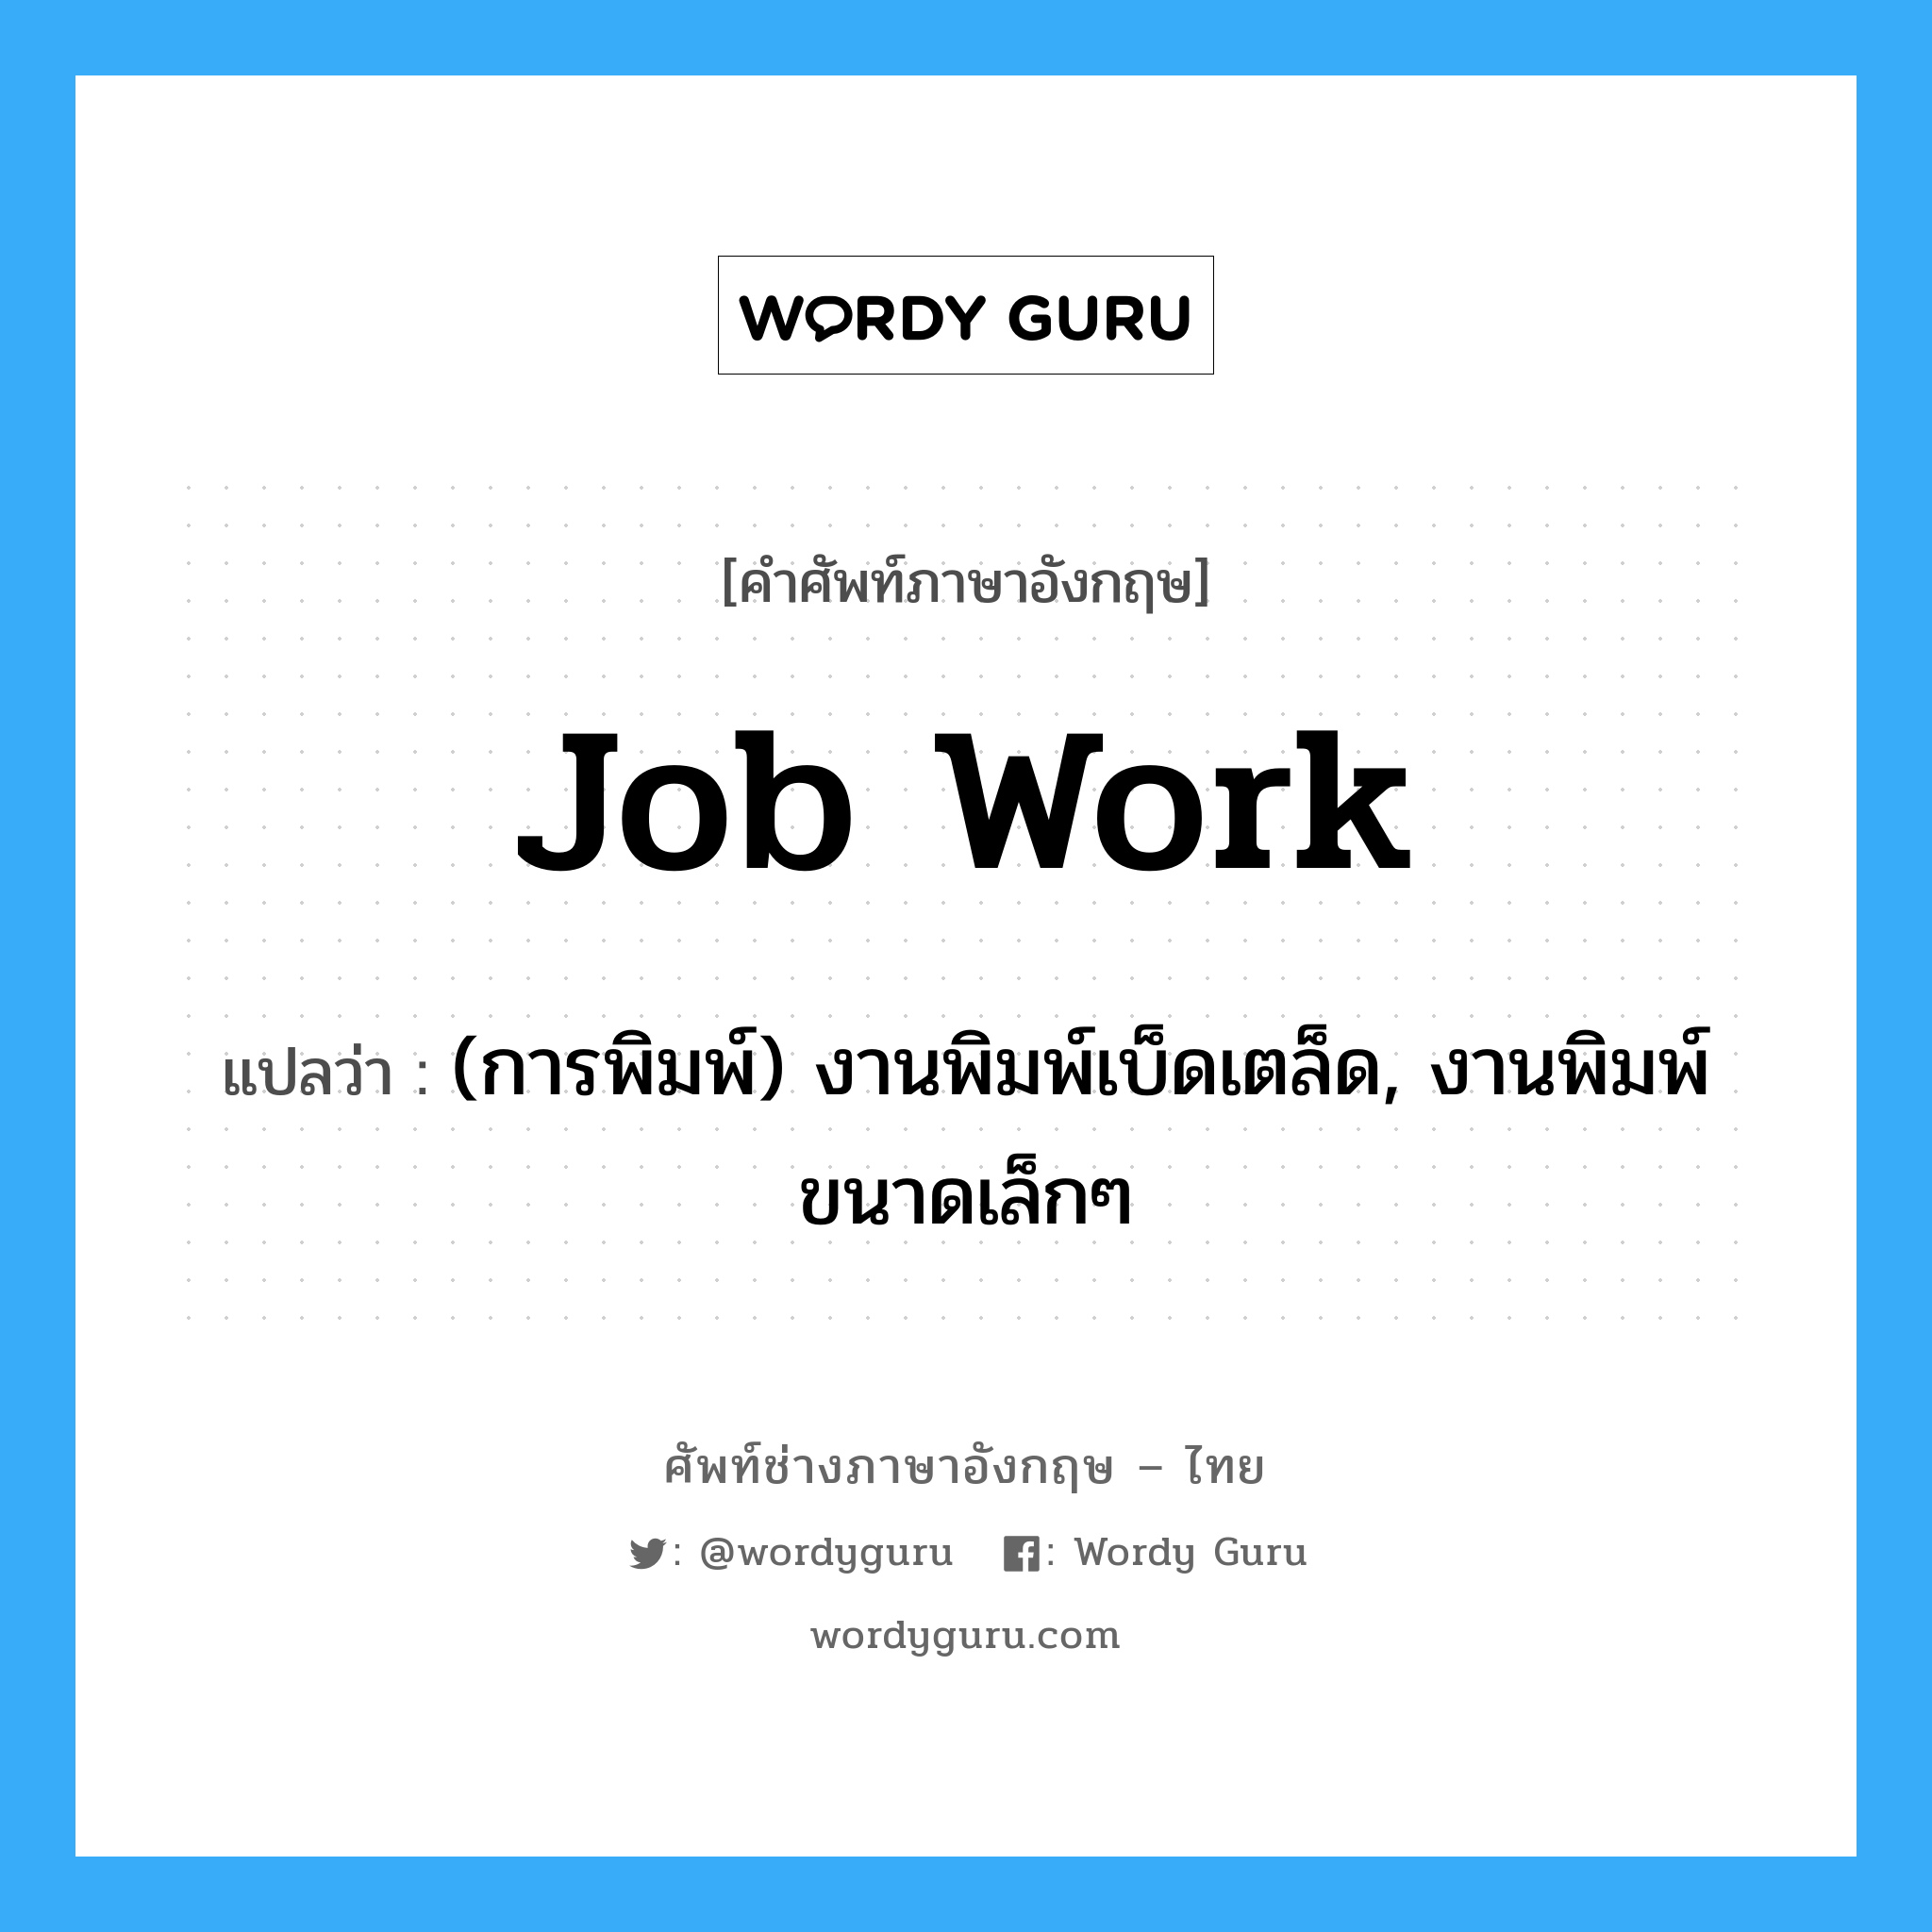 job work แปลว่า?, คำศัพท์ช่างภาษาอังกฤษ - ไทย job work คำศัพท์ภาษาอังกฤษ job work แปลว่า (การพิมพ์) งานพิมพ์เบ็ดเตล็ด, งานพิมพ์ขนาดเล็กๆ